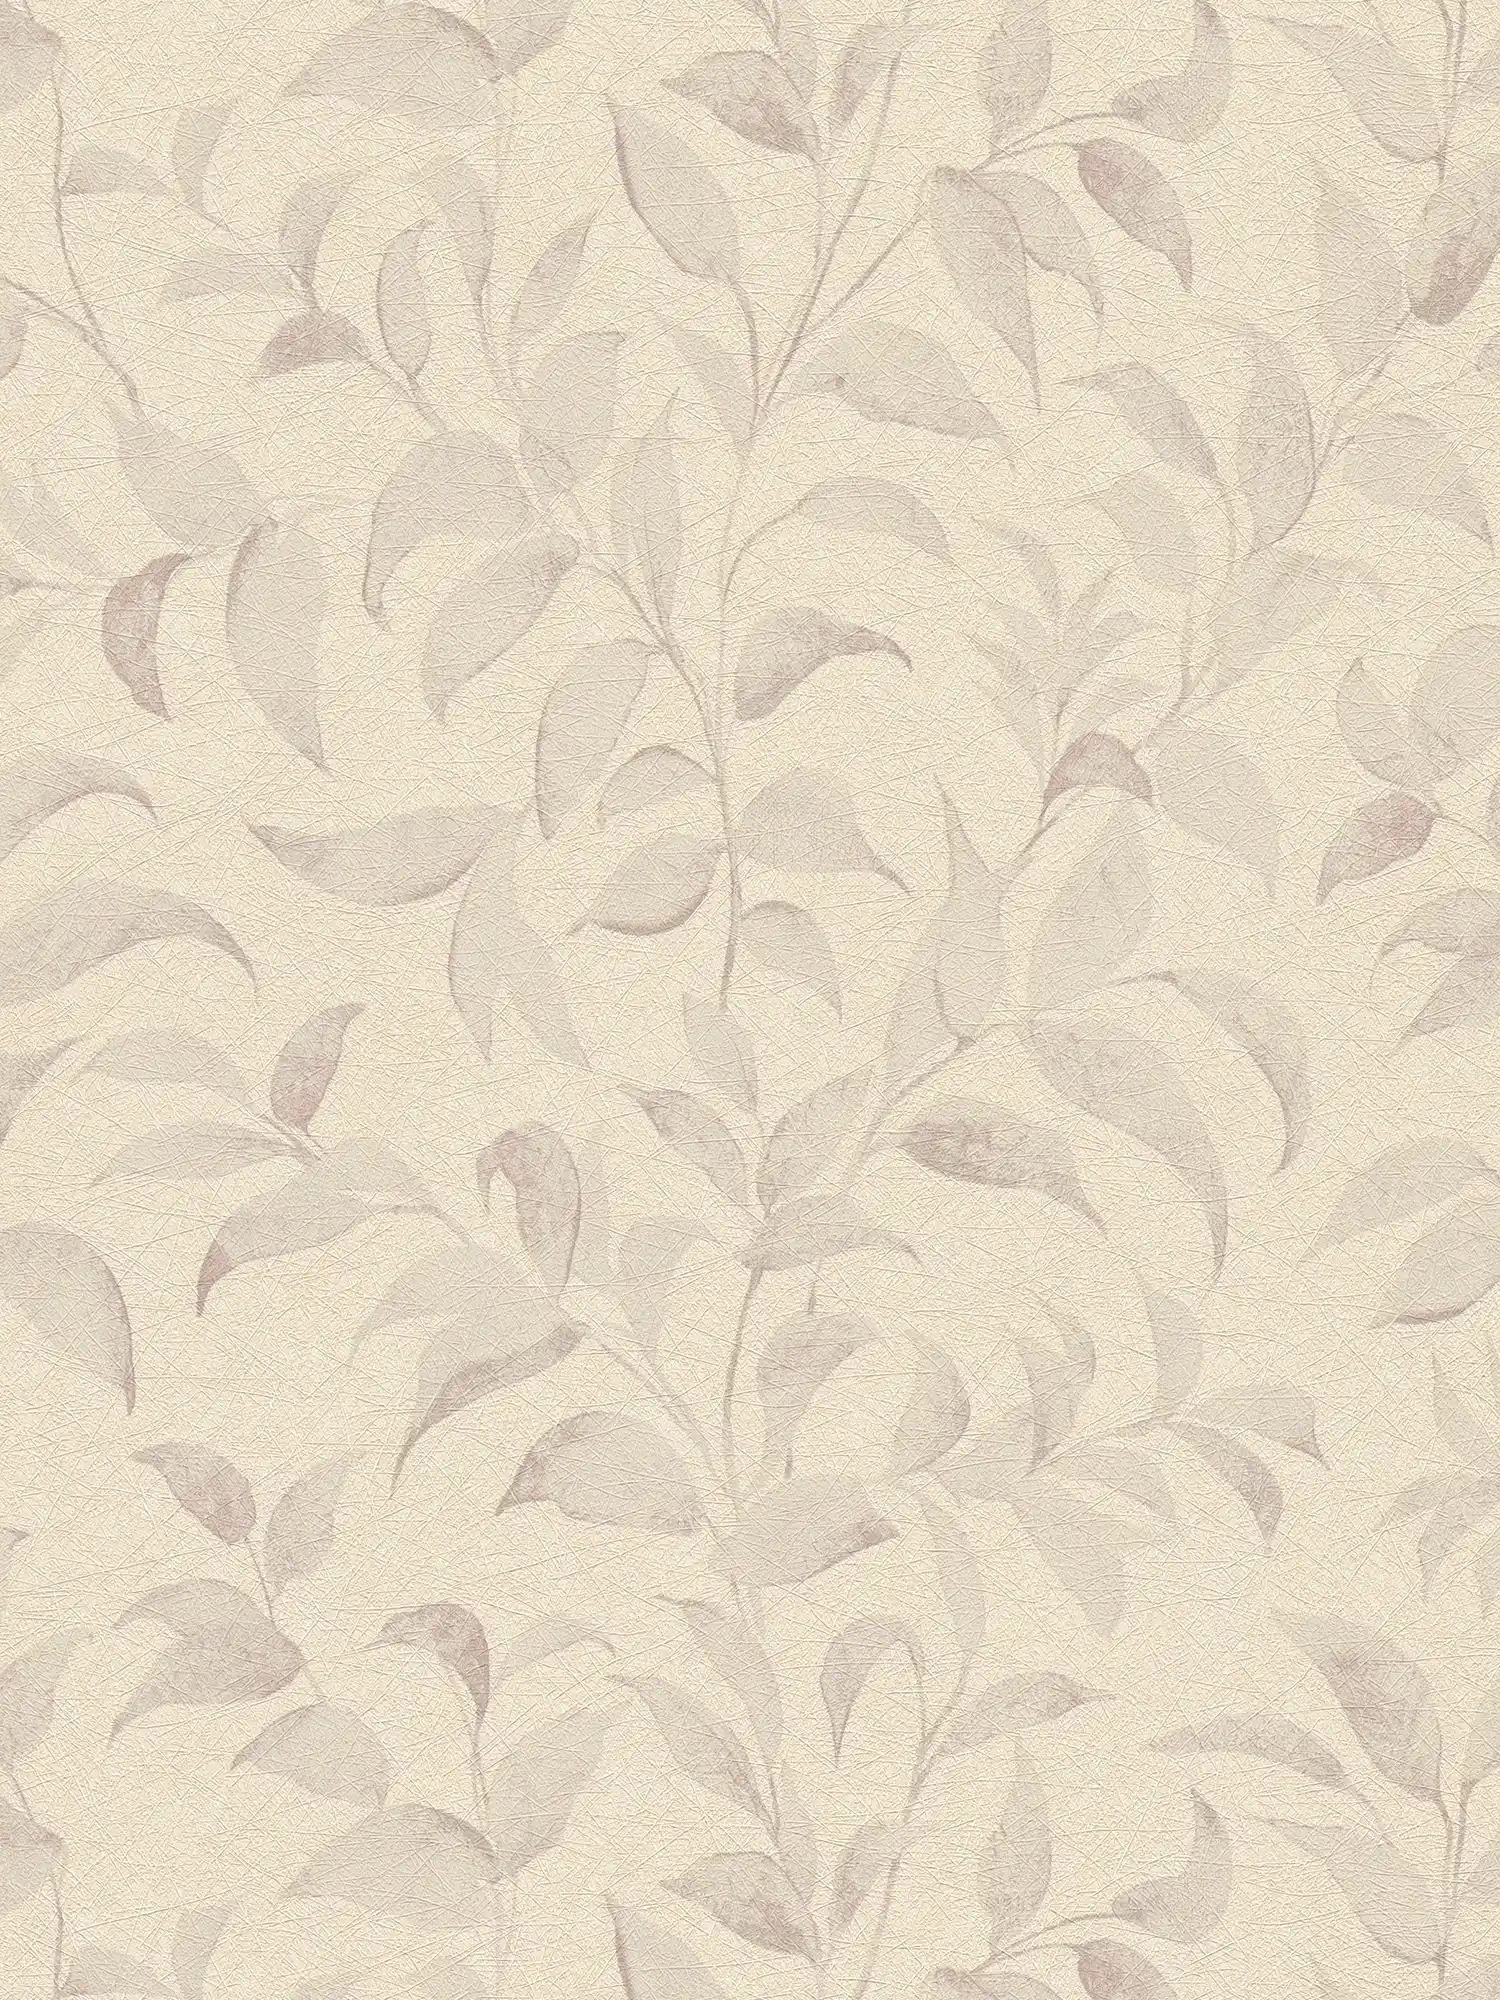 Florale Tapete mit Blättern schimmernd strukturiert – Grau, Silber
